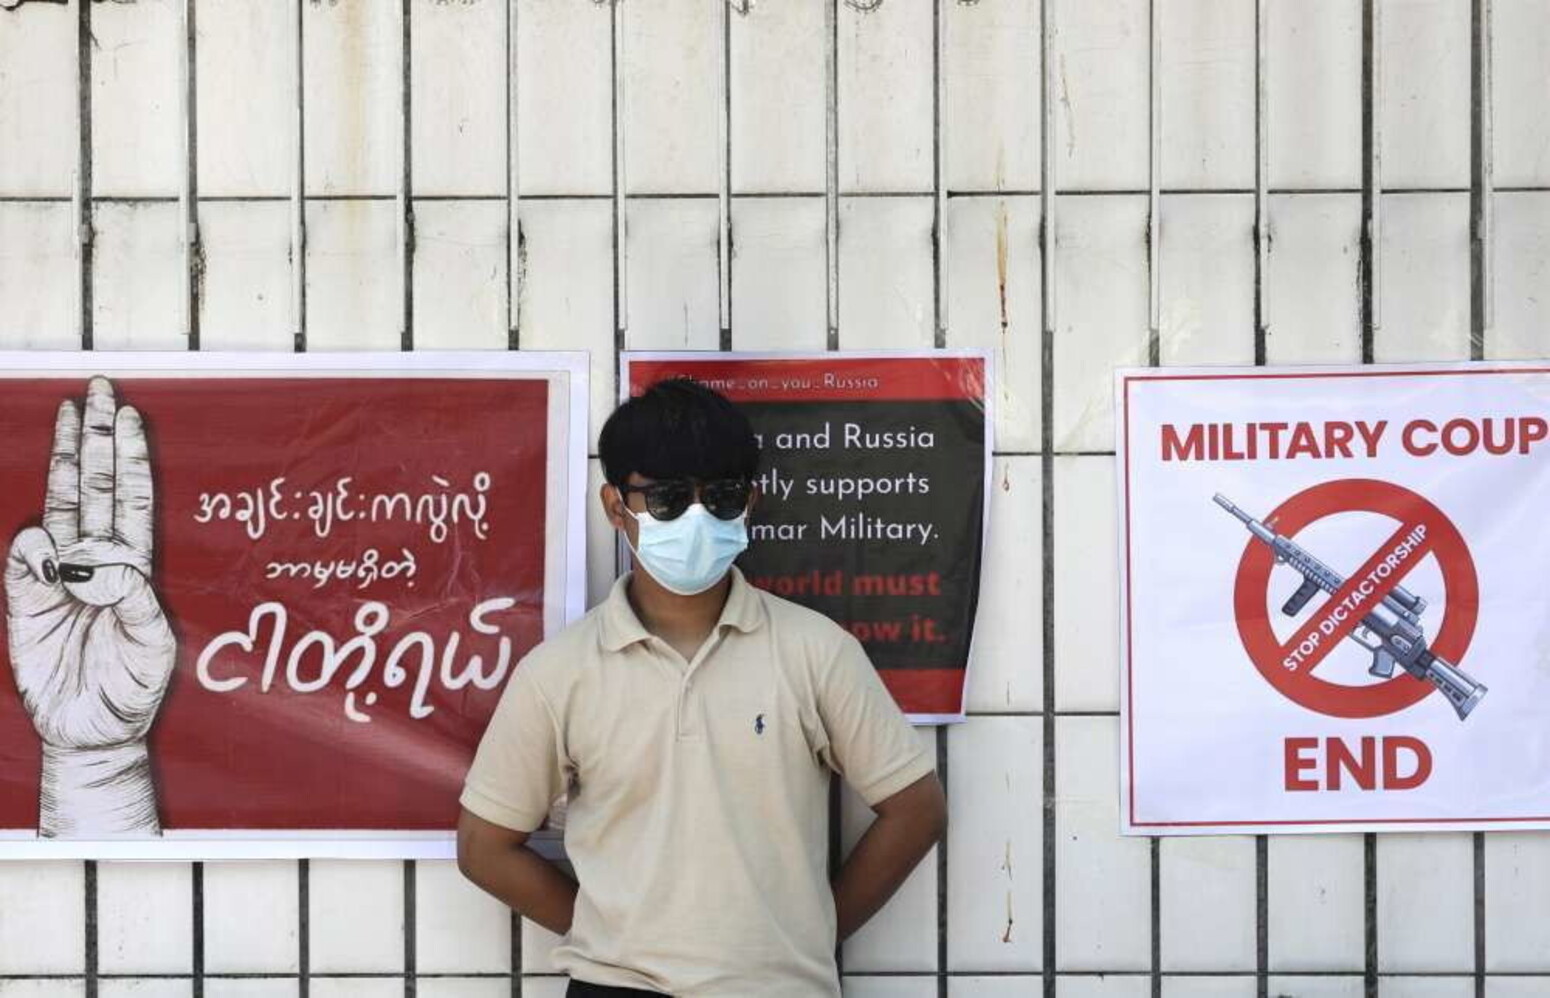 myanmar, giunta vieta agli uomini di lavorare all'estero